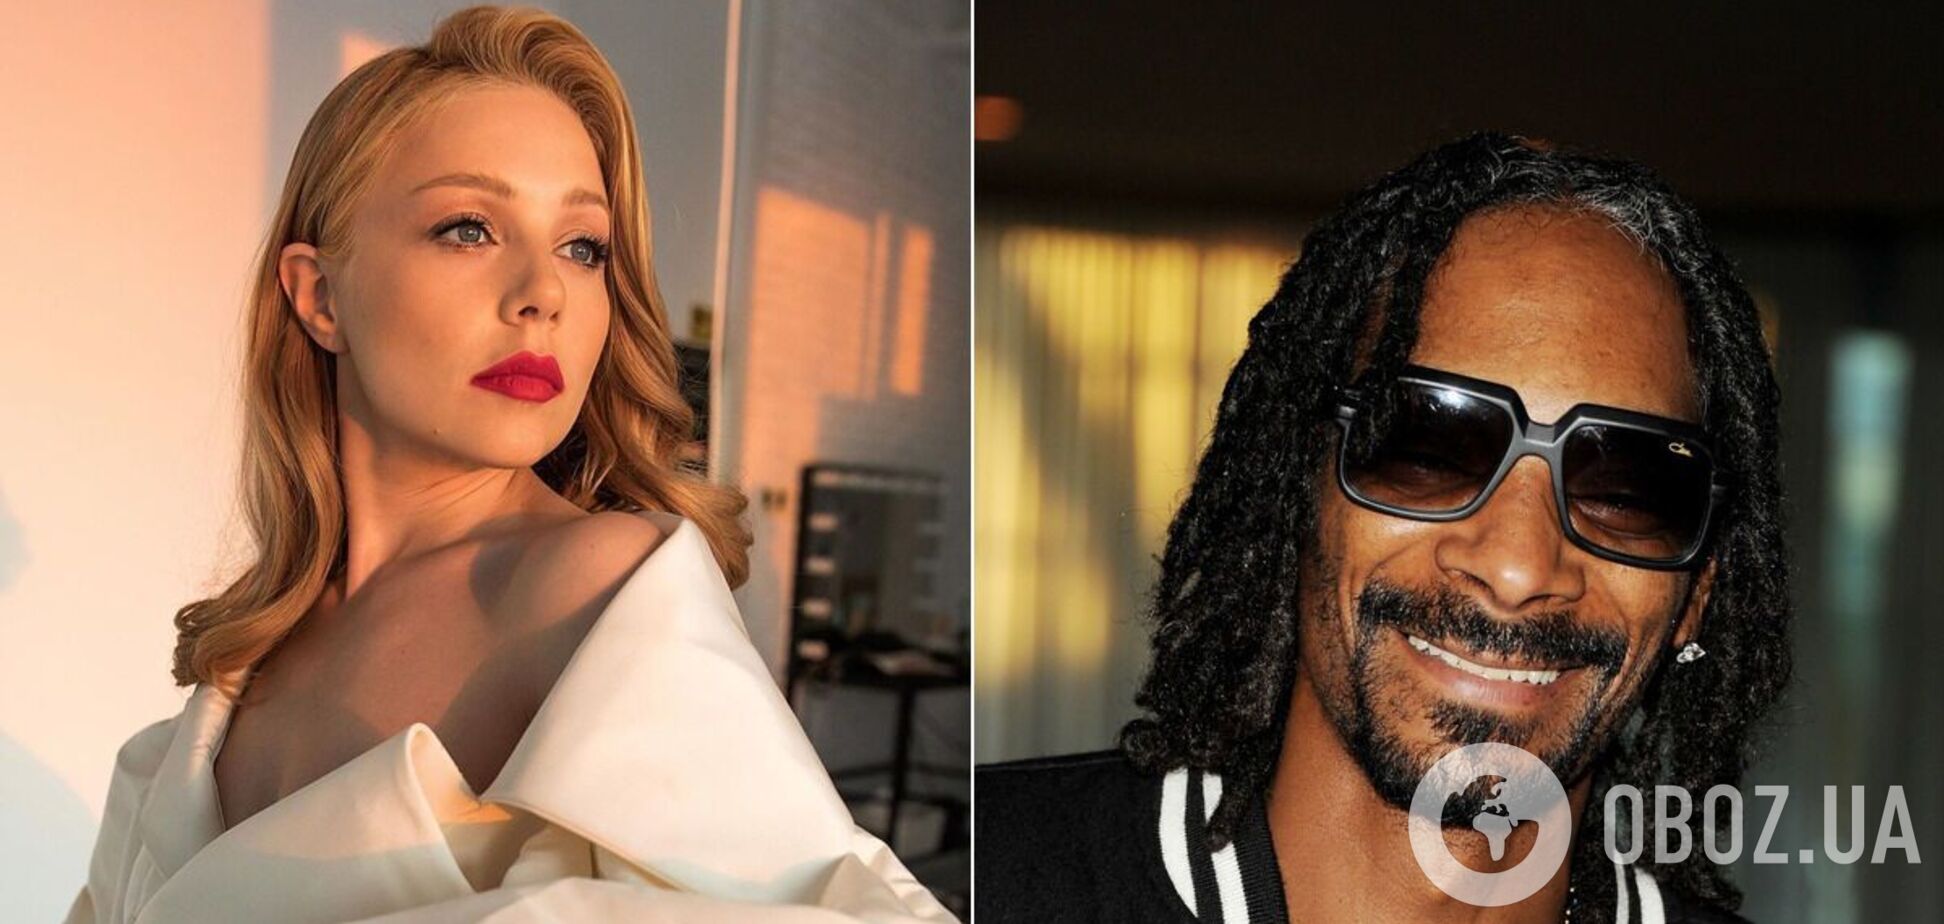 Тина Кароль рассказала о сотрудничестве с Snoop Dogg